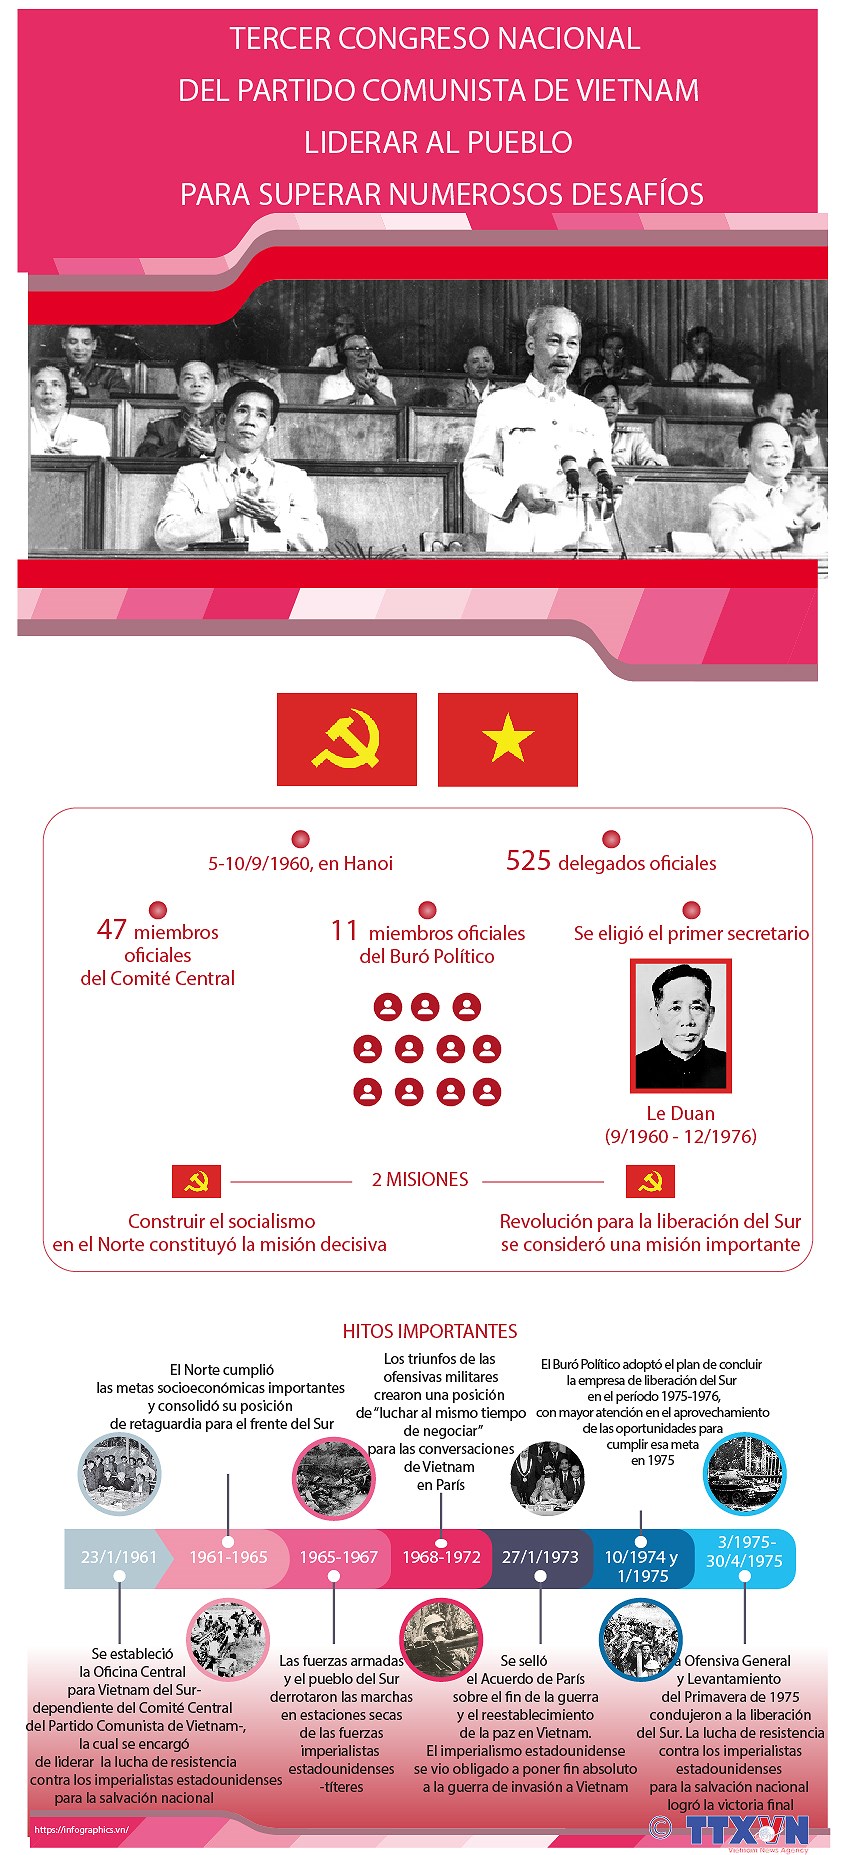 III Congreso Nacional del Partido Comunista de Vietnam: liderar al pueblo para superar desafios hinh anh 1